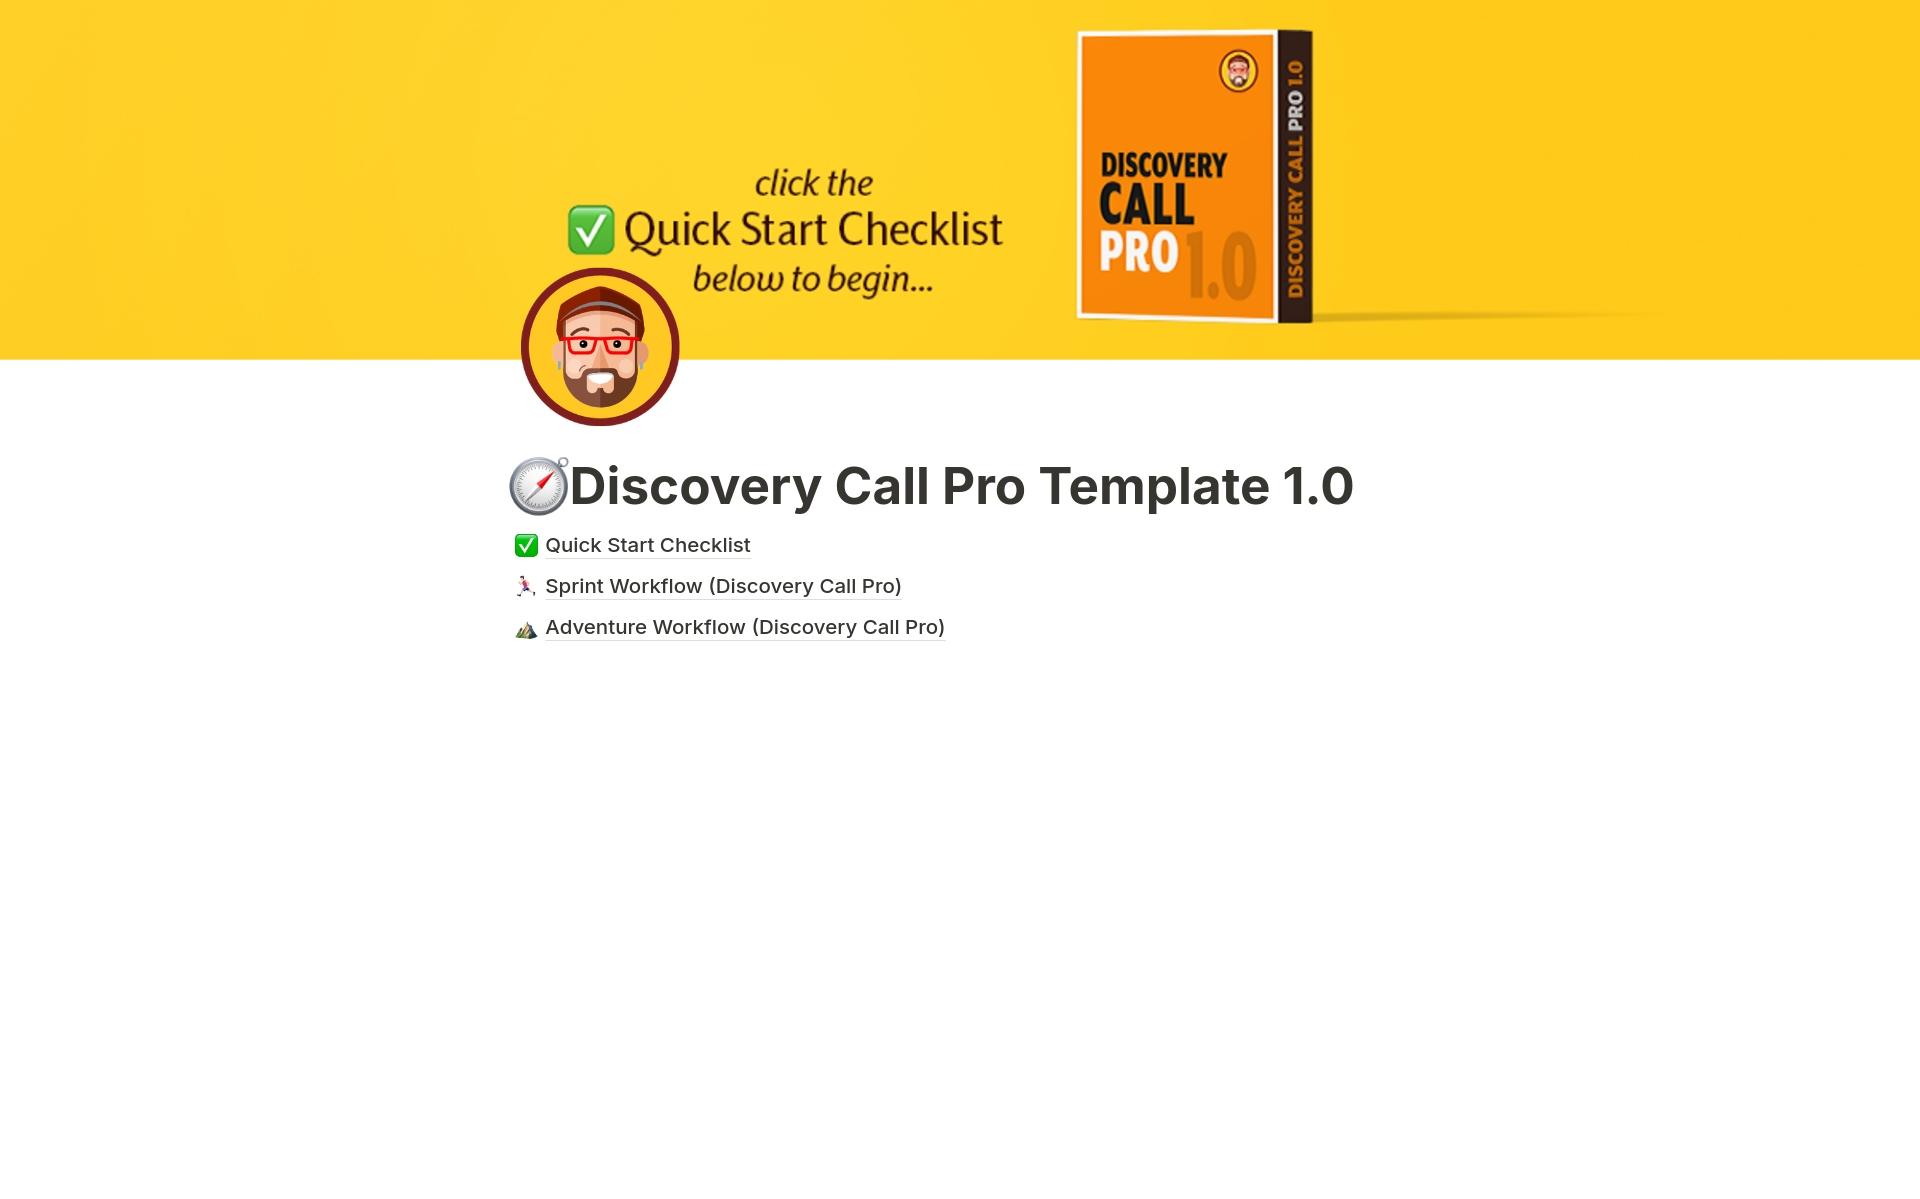 Vista previa de plantilla para Discovery Call Pro